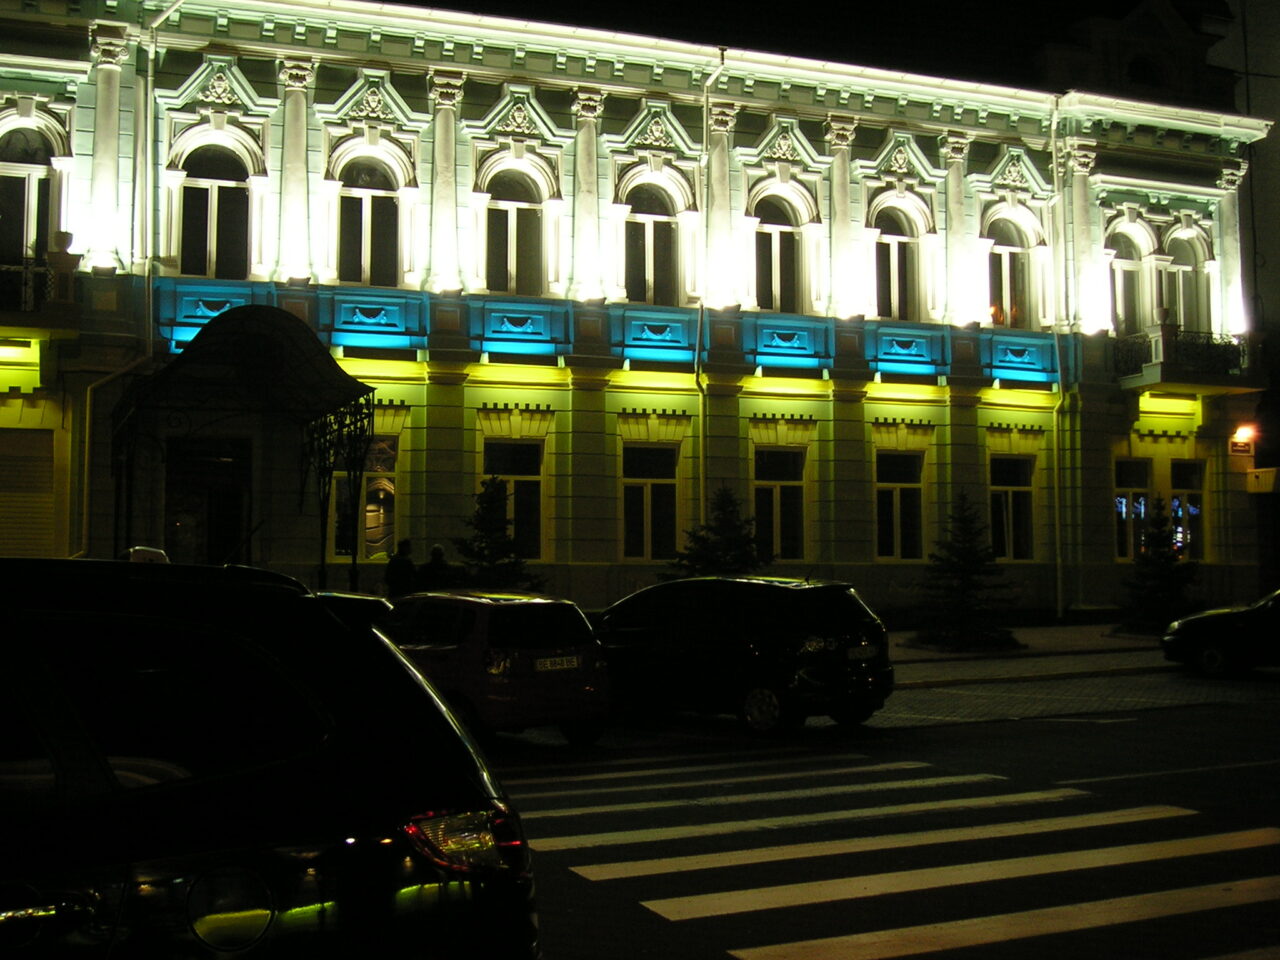 Архітектурна підсвітка фасаду будівлі по вул.Нікольска м. Миколаїв 3 2009р.